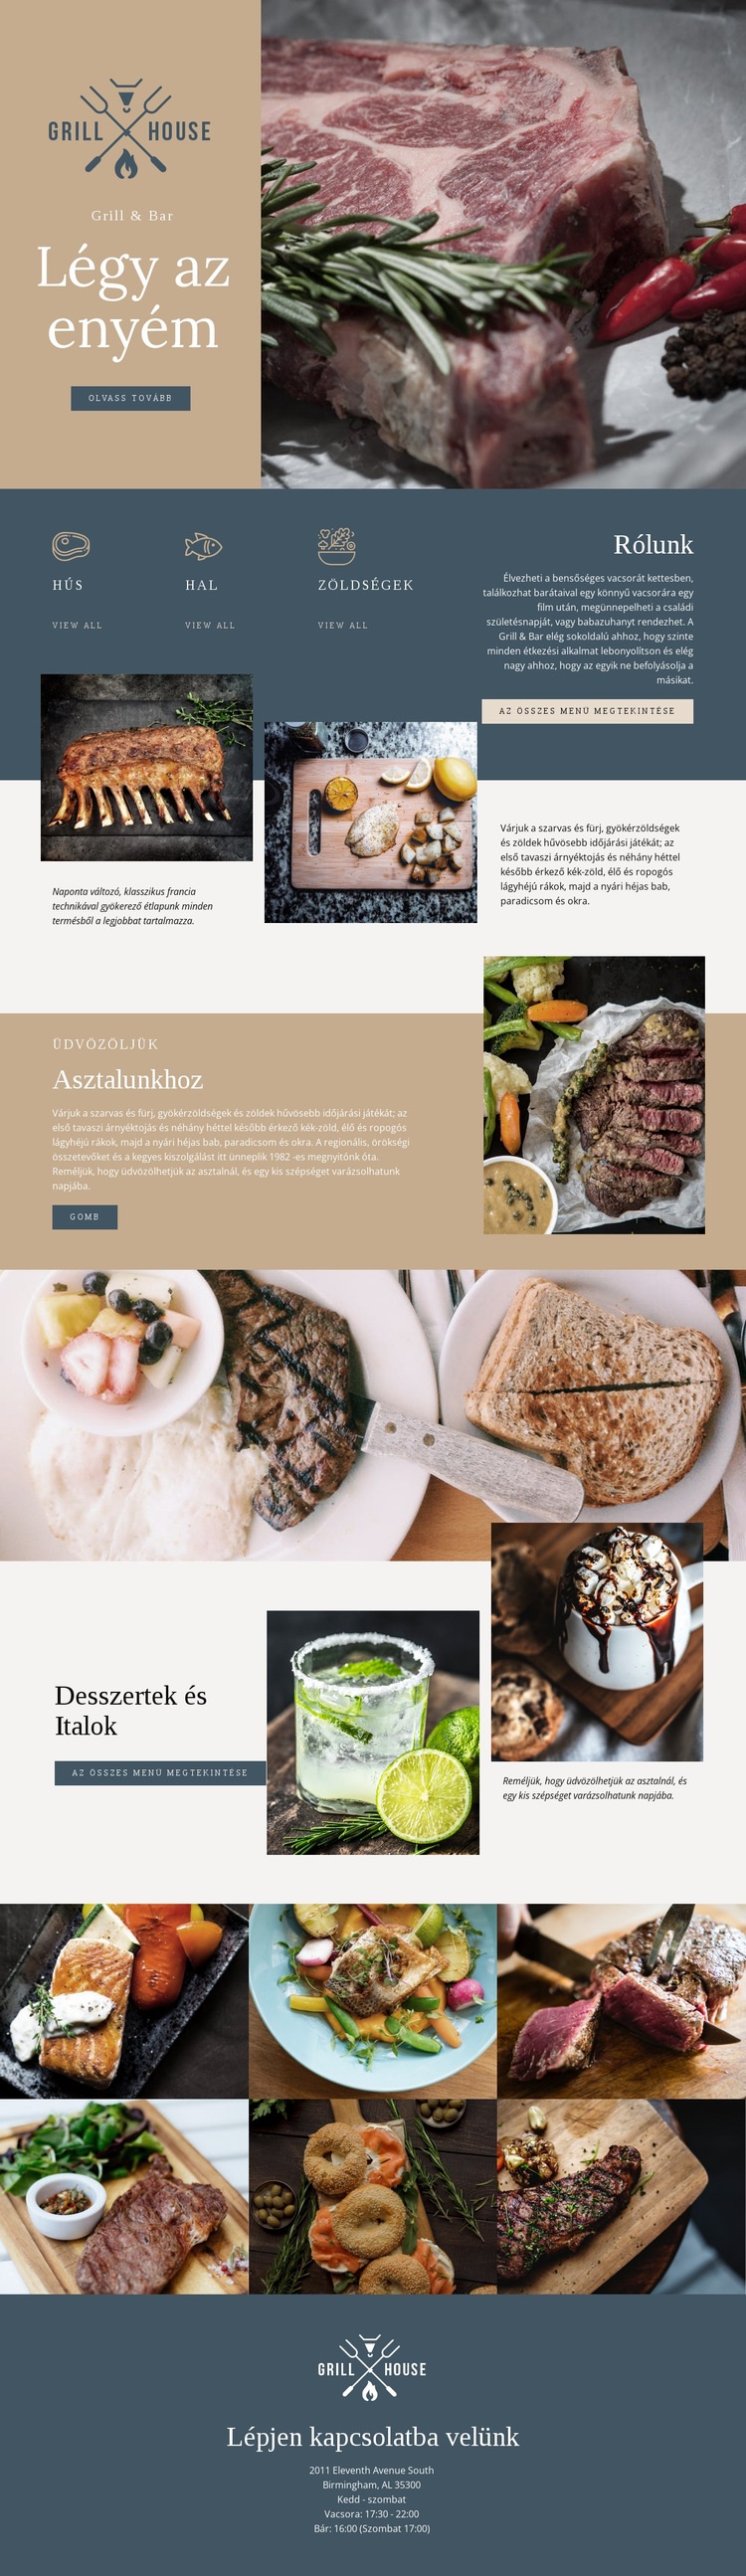 A legjobb grill ház étterem Weboldal tervezés